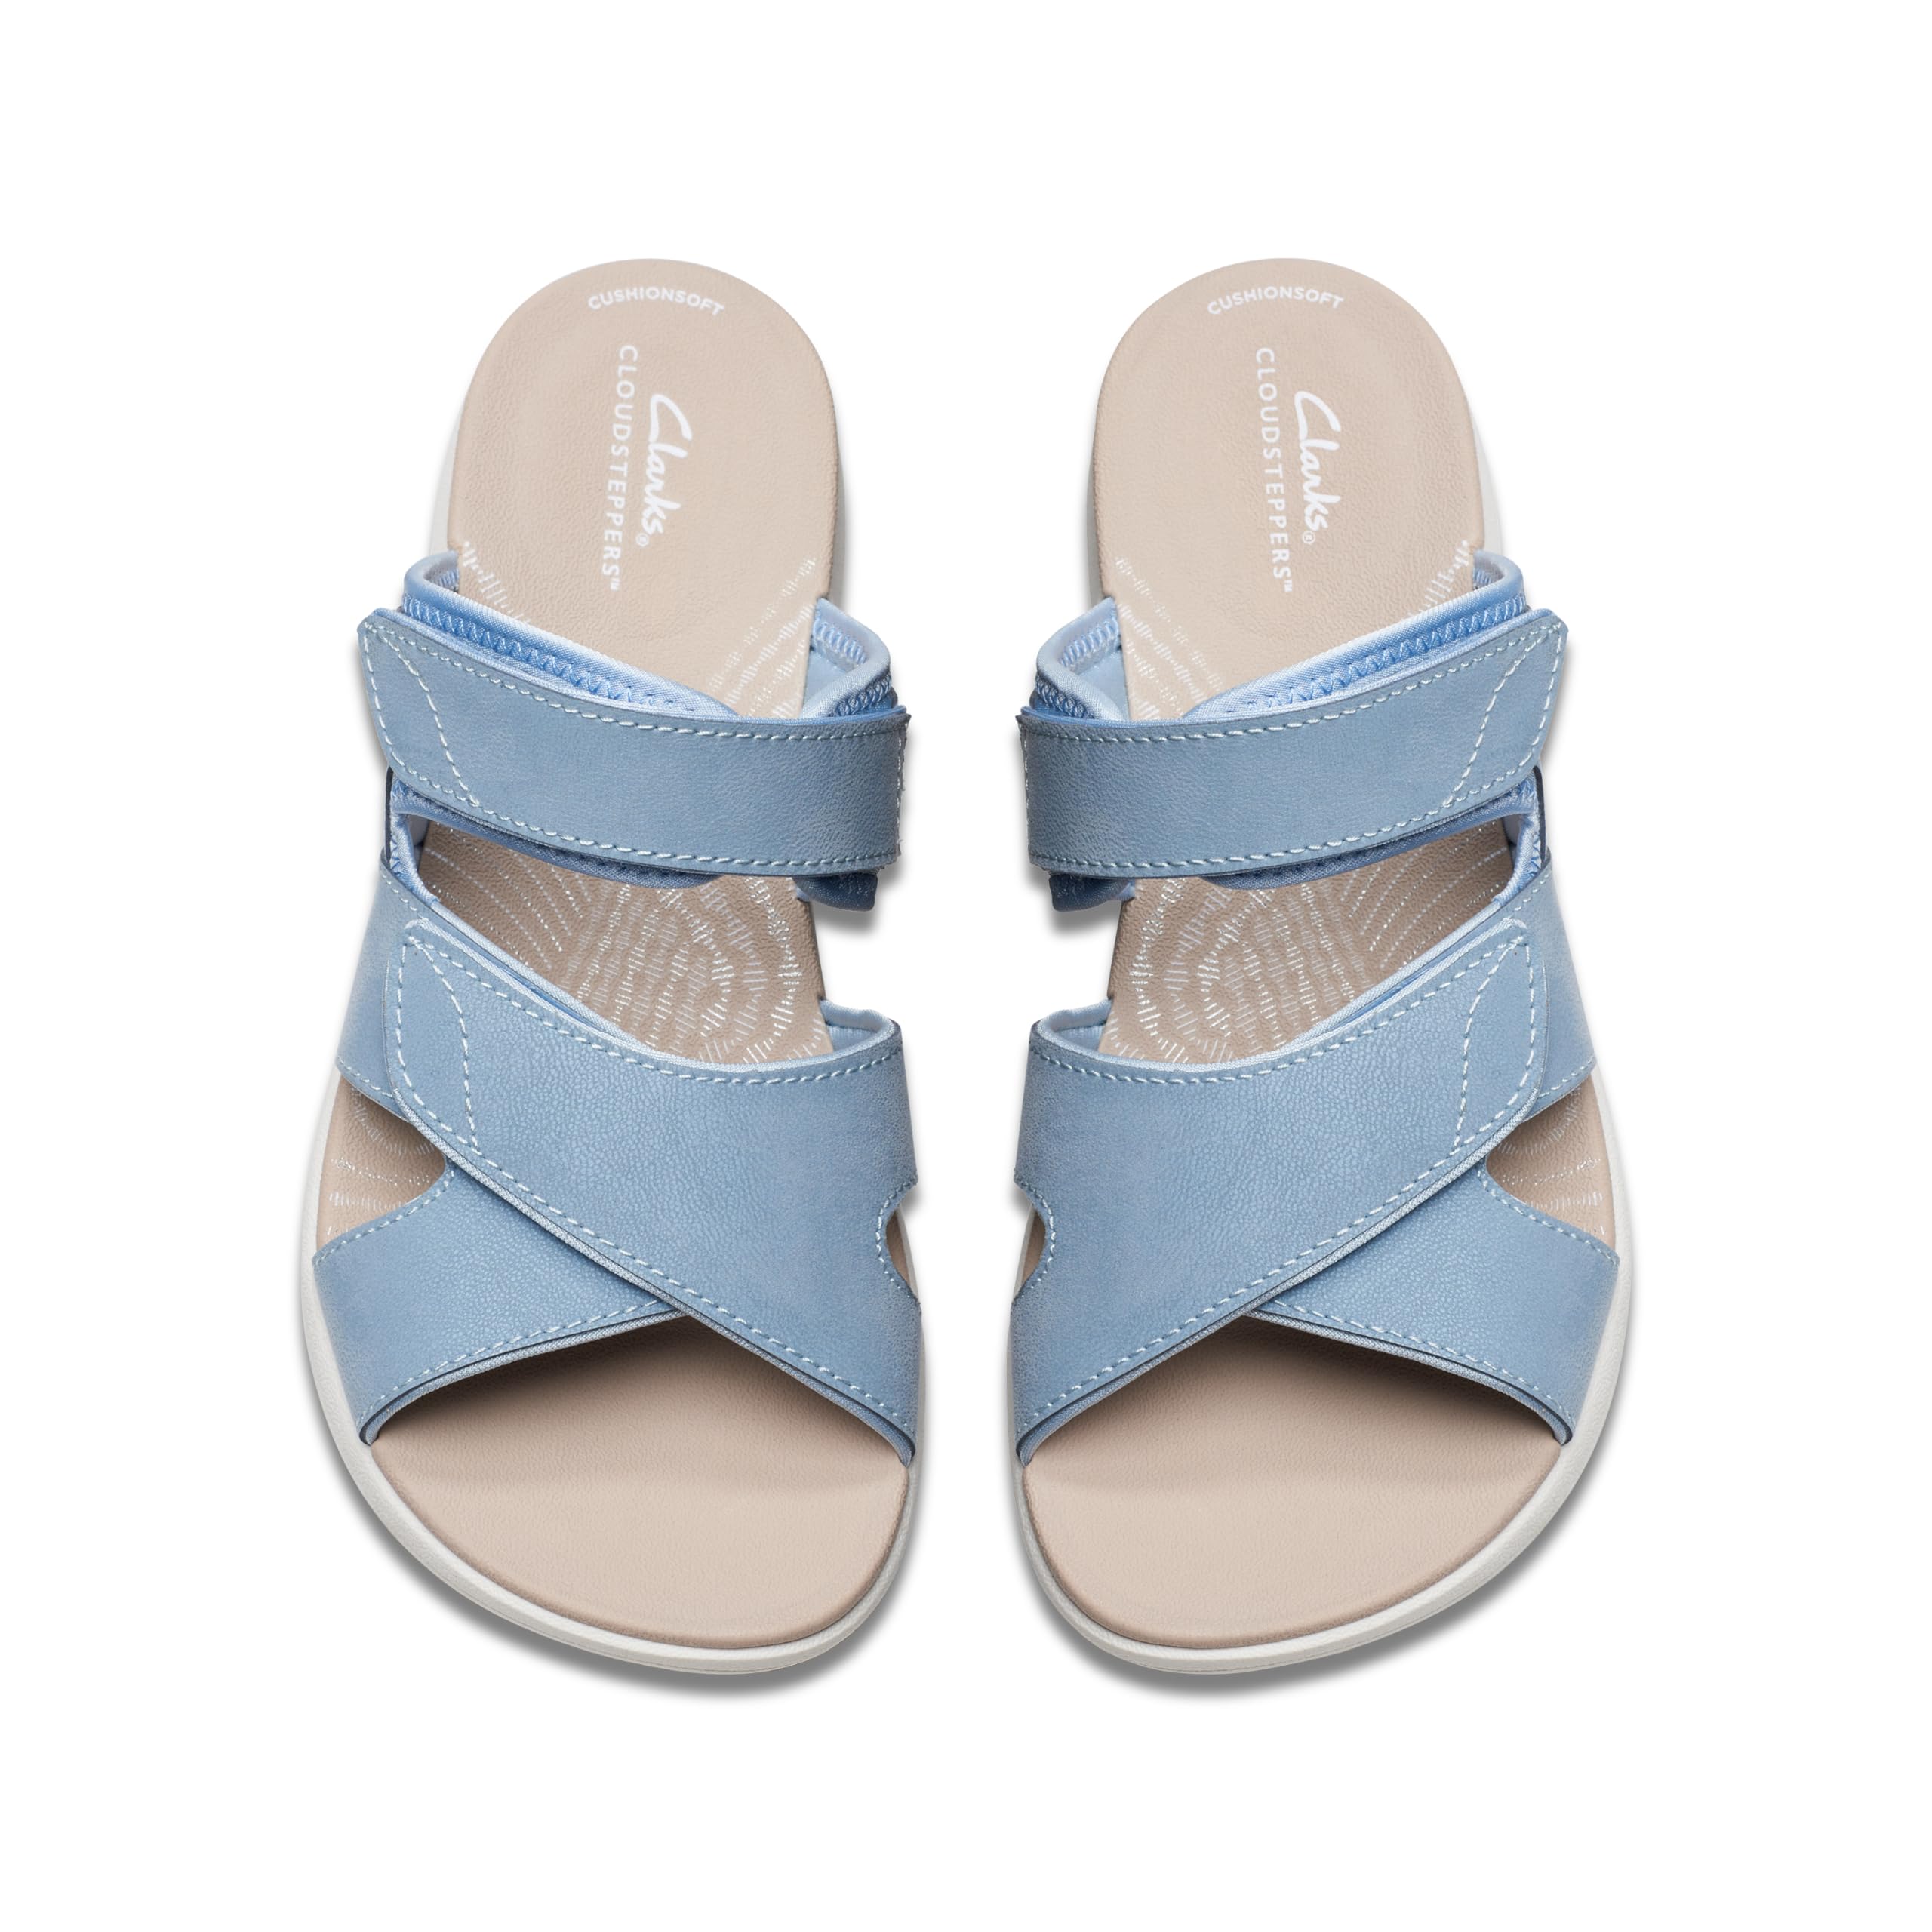 Clarks Women's Mira Ease Slide Sandal